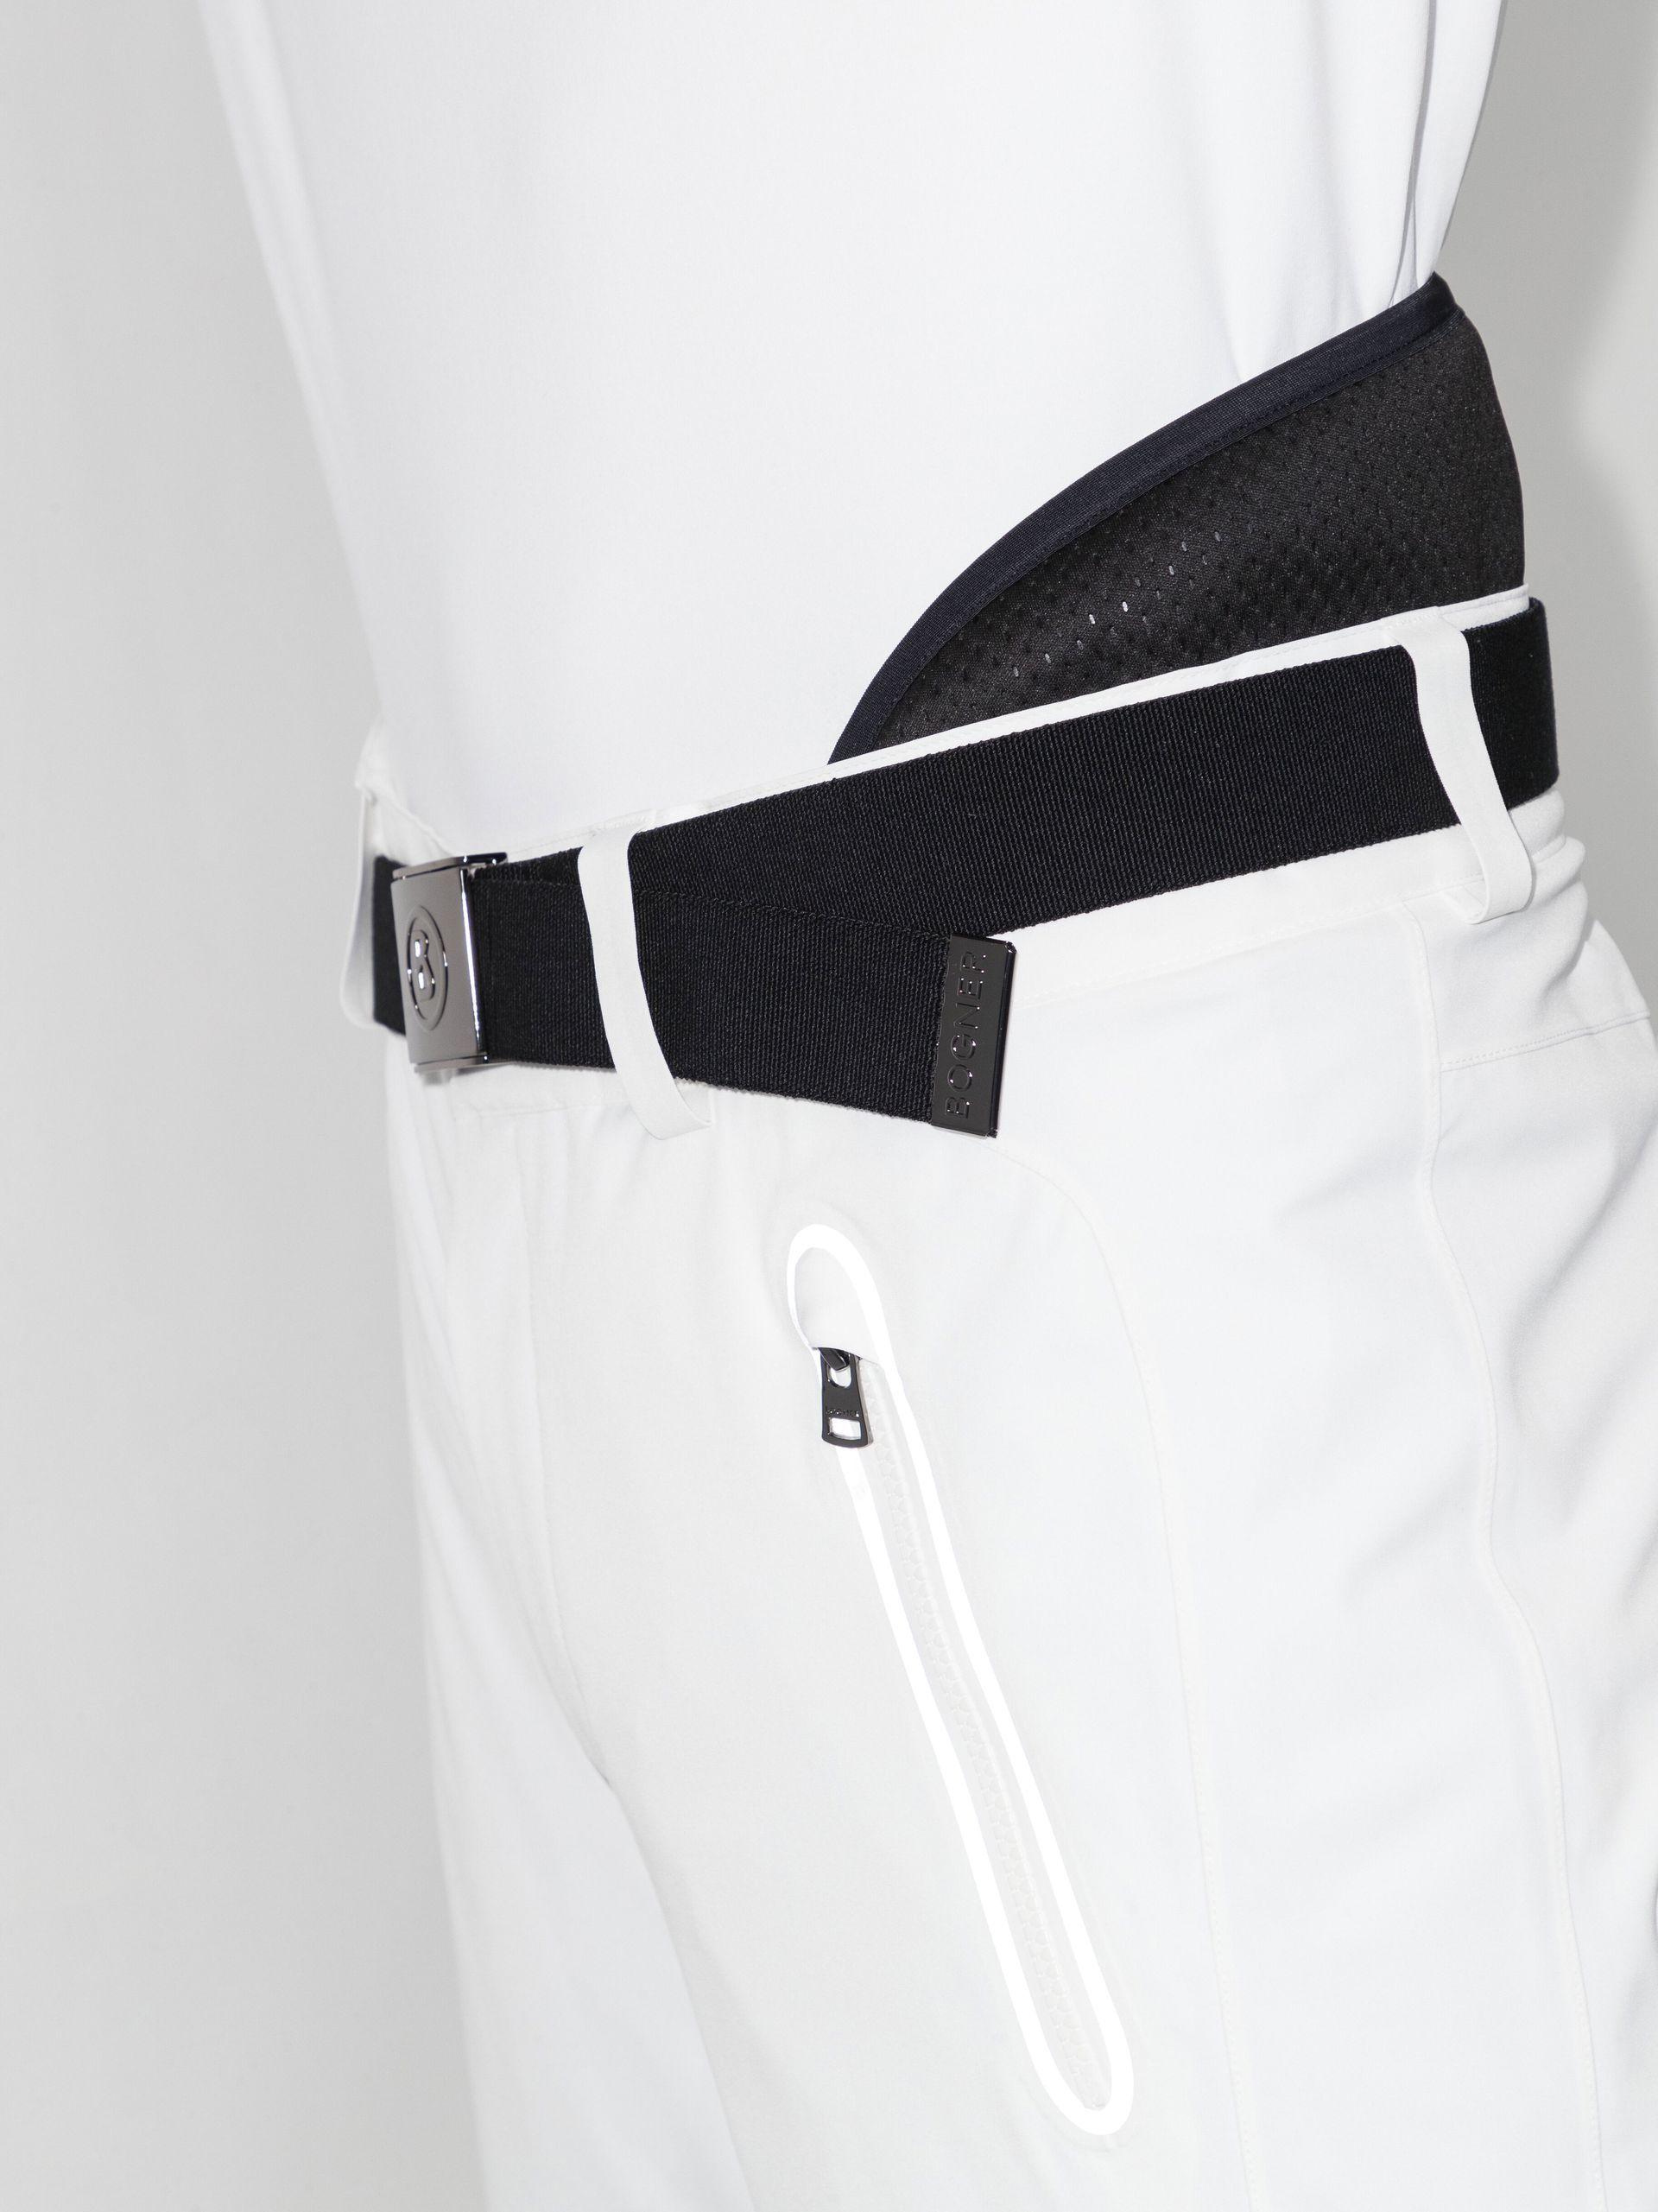 White TIM2-T belted ski trousers, Bogner